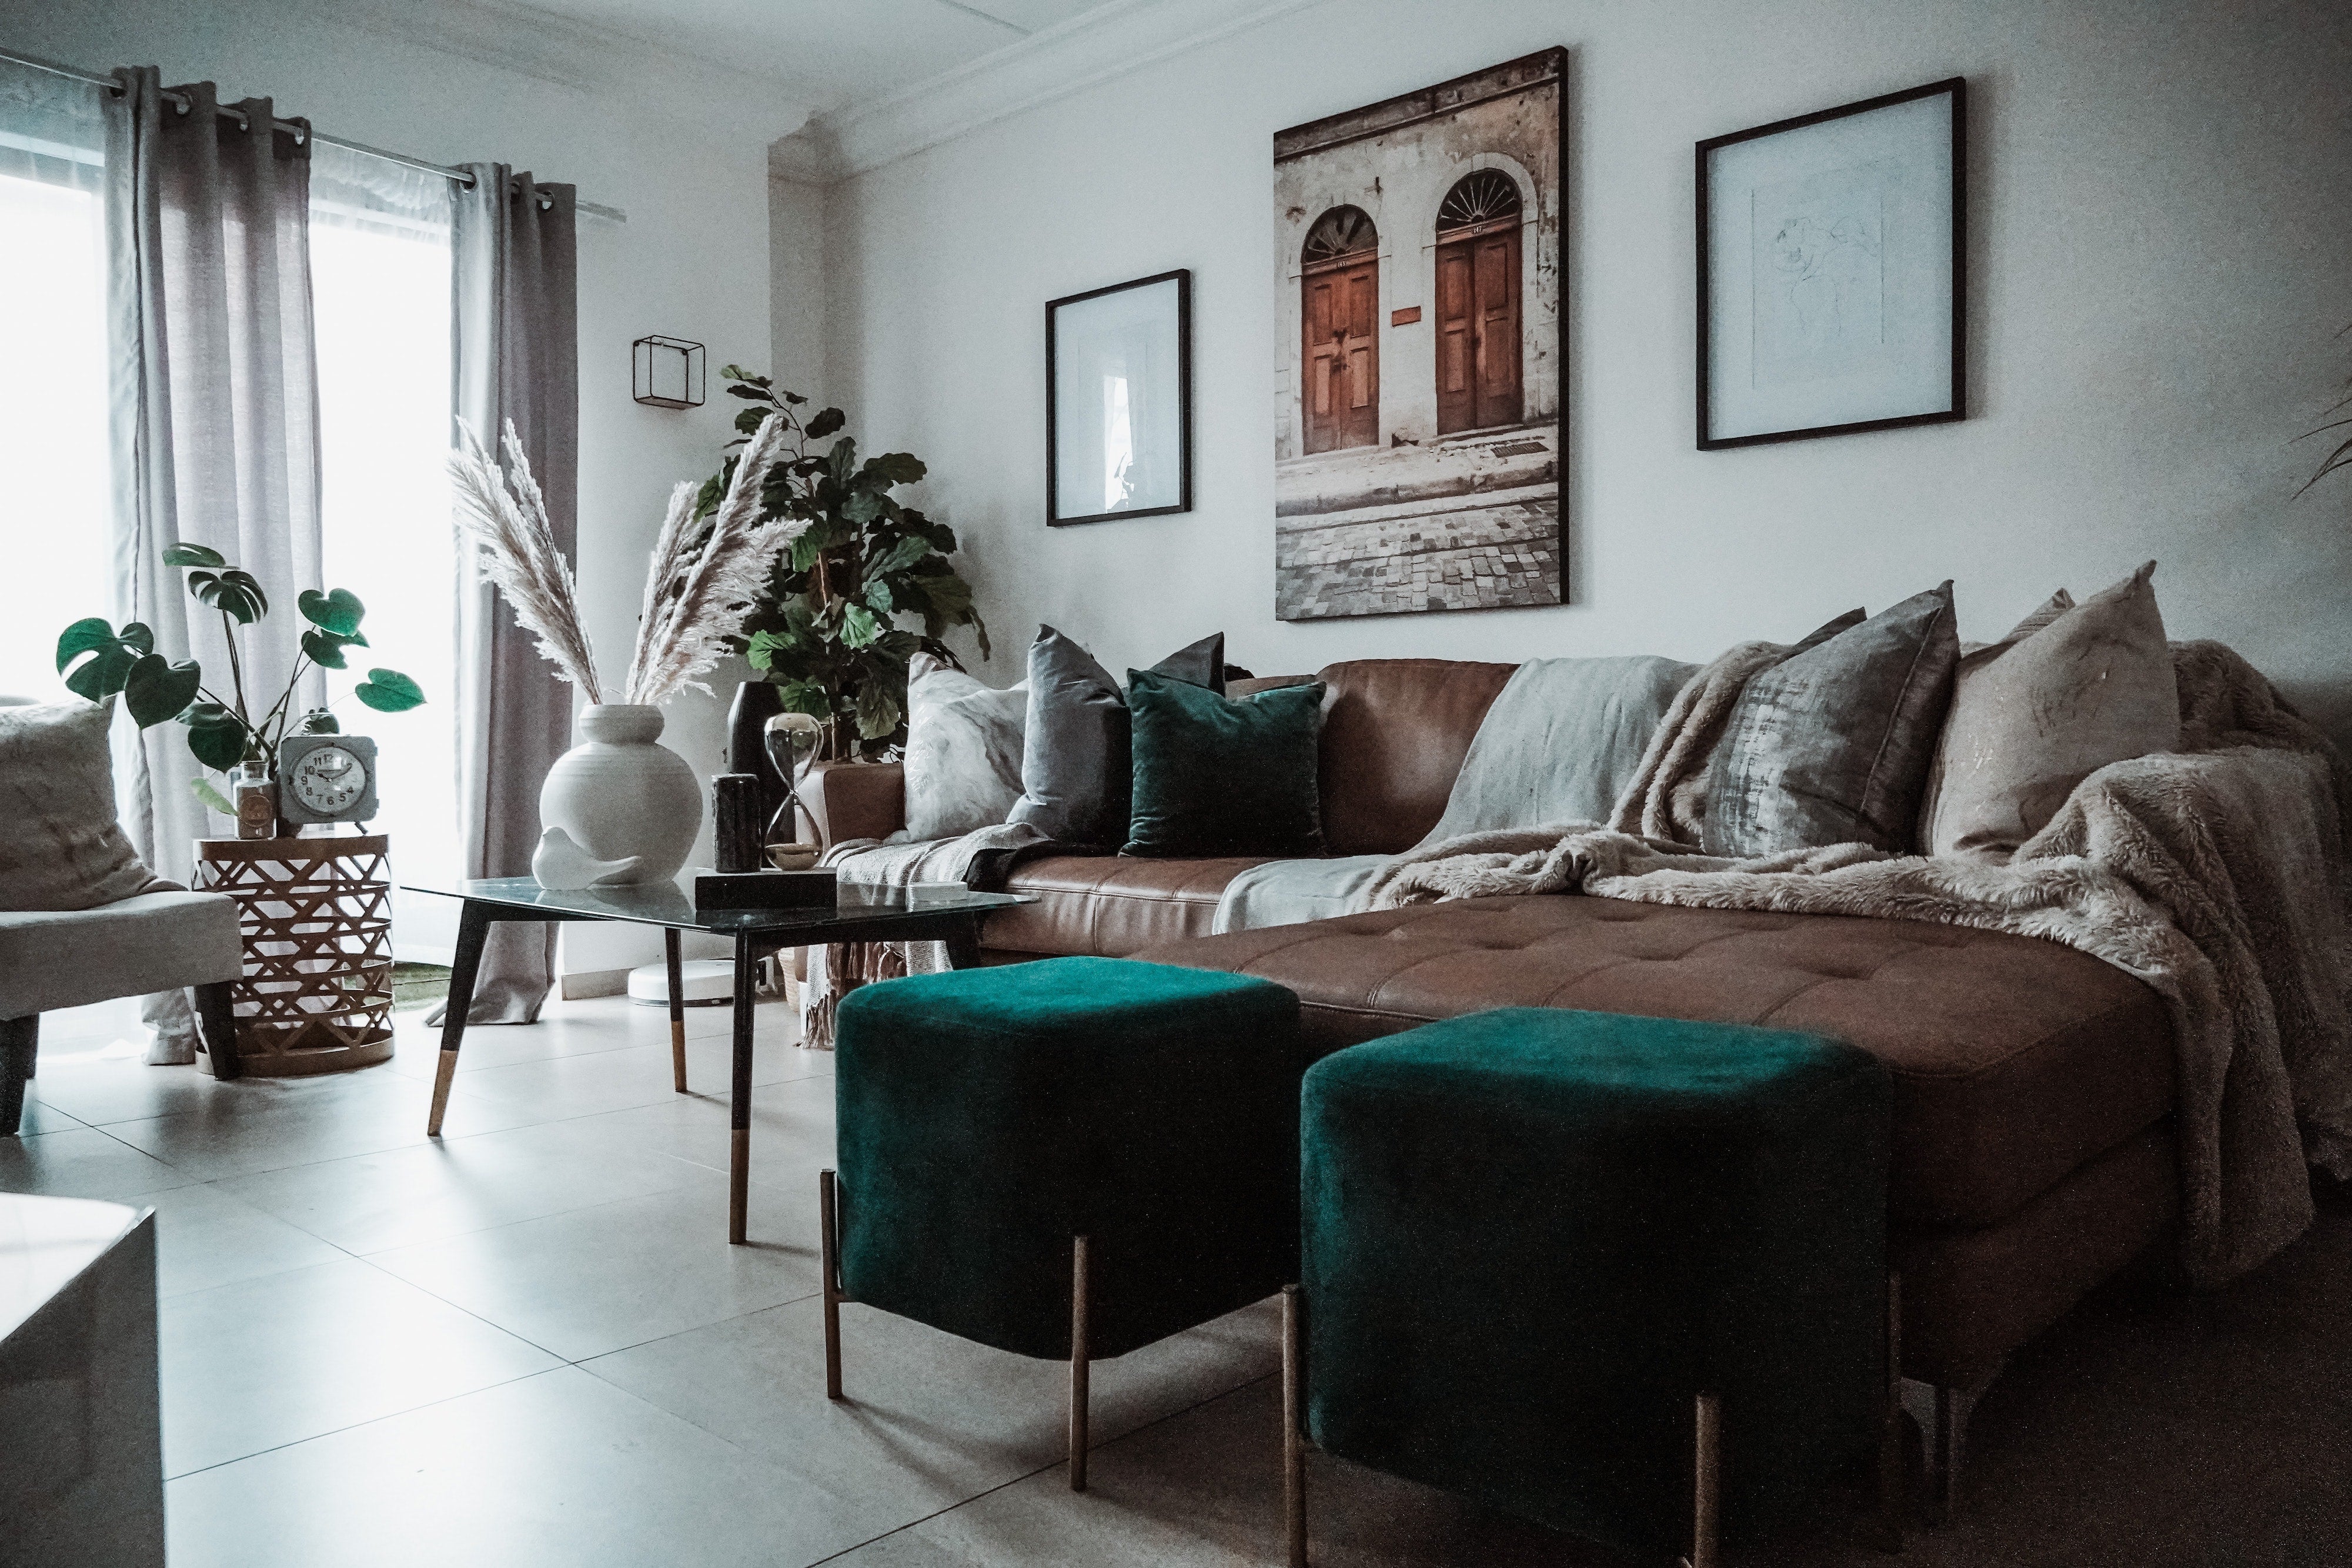 Stile e originalità: ecco qualche consiglio per arredare la tua casa in perfetto stile scandinavo!